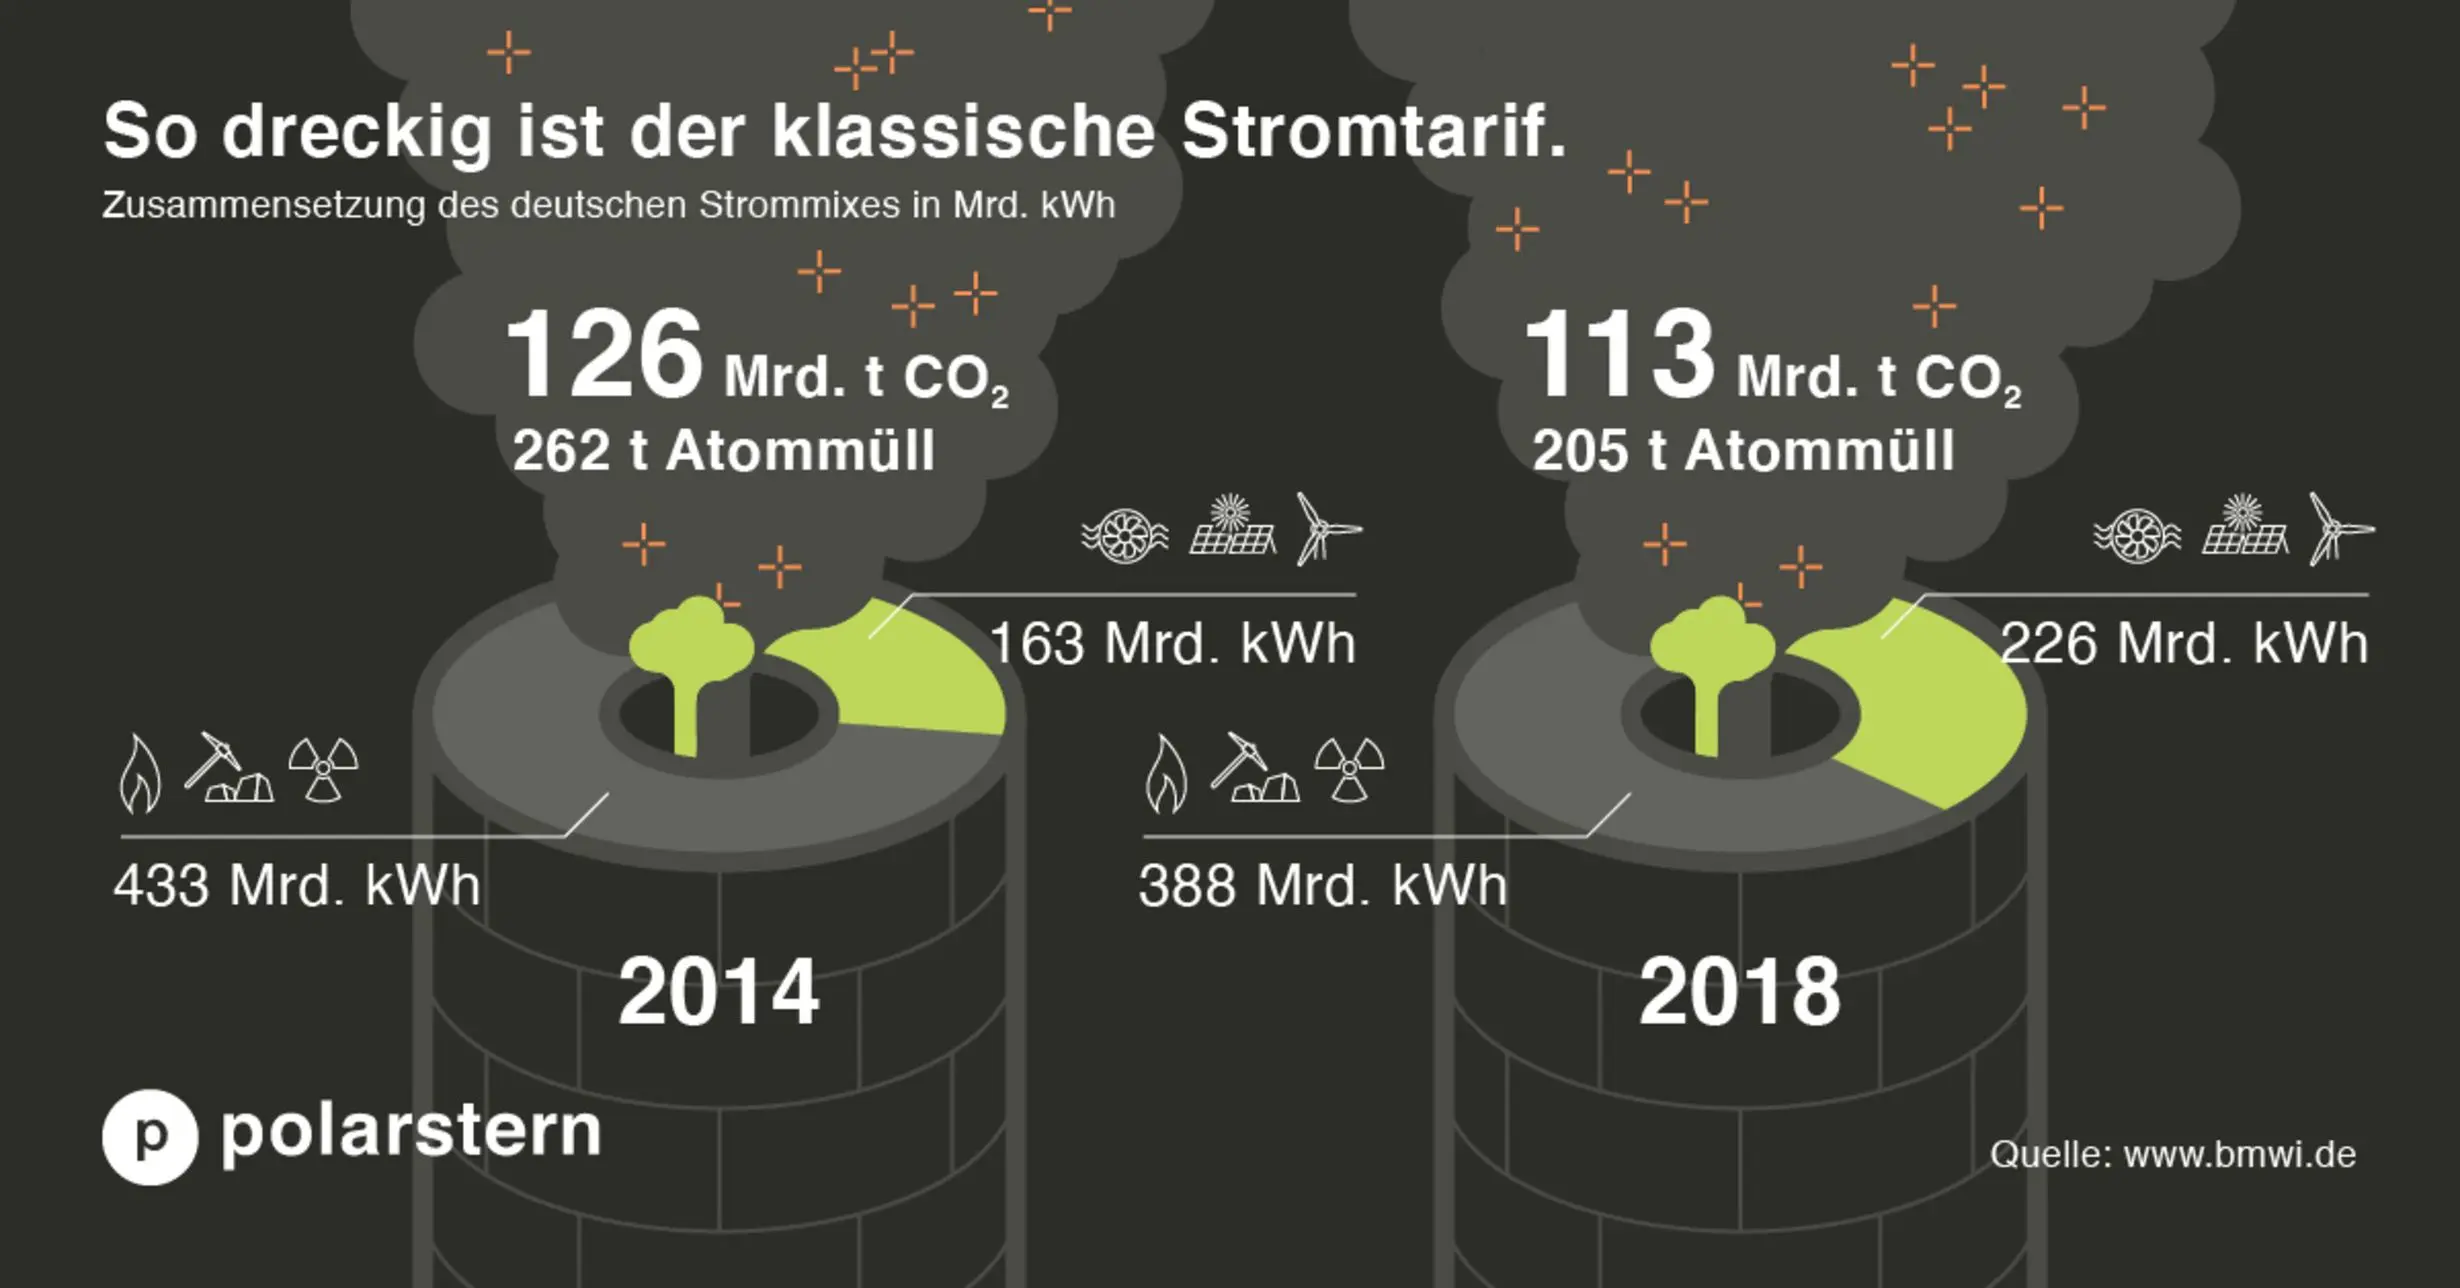 Vergleich Strommix 2014 und 2018